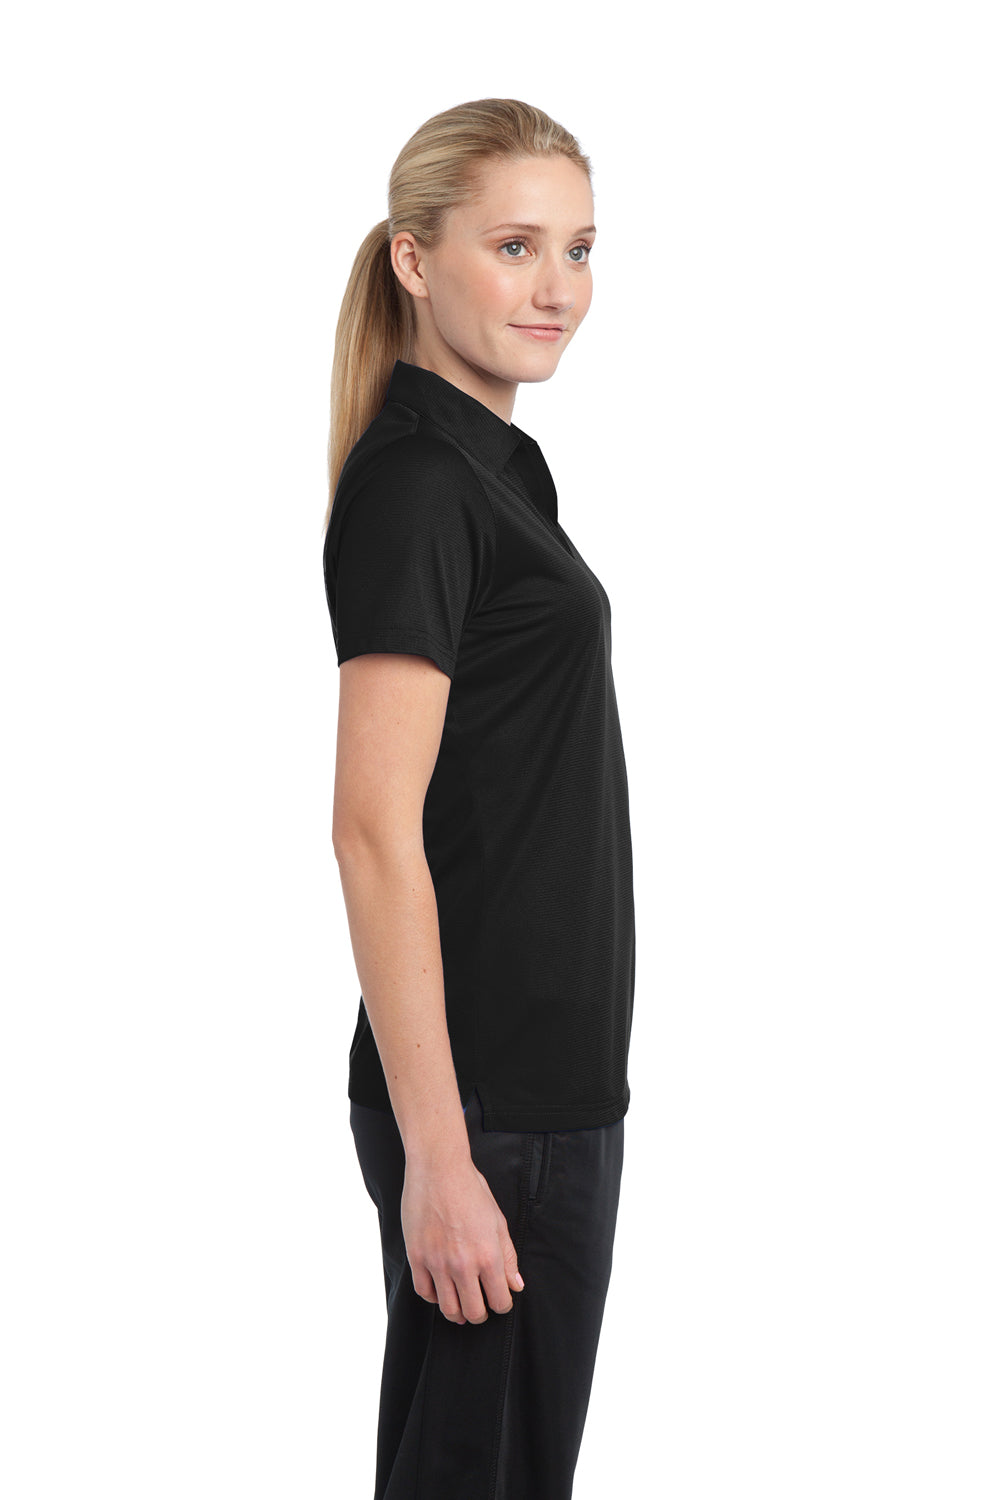 Sport-Tek LST690 Womens Active Mesh Moisture Wicking Short Sleeve Polo Shirt Black Side